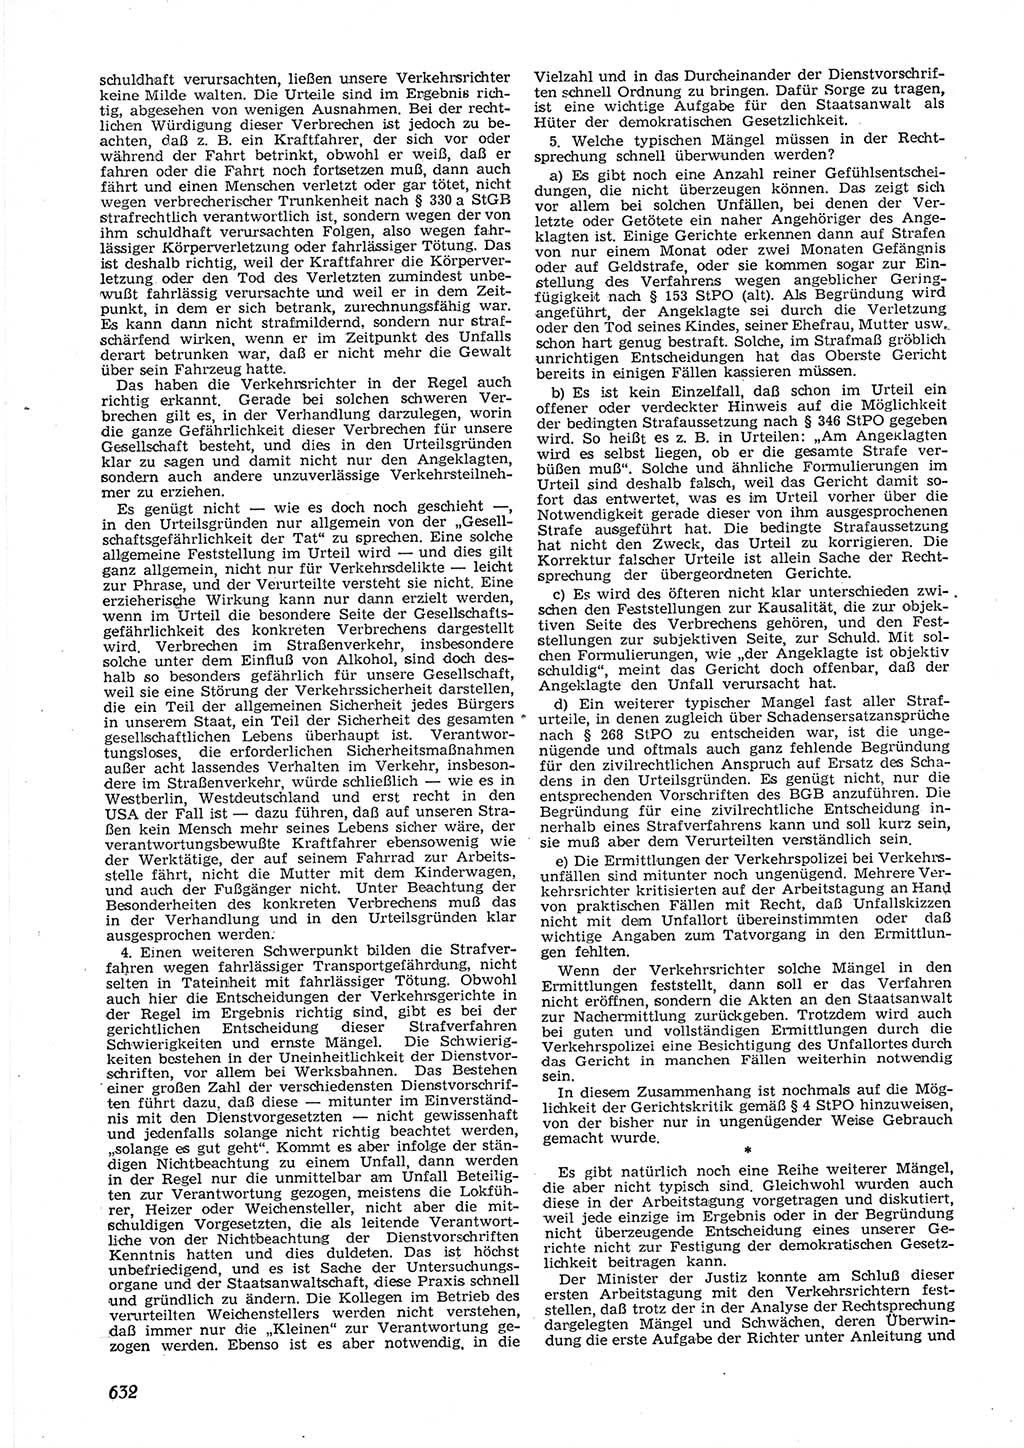 Neue Justiz (NJ), Zeitschrift für Recht und Rechtswissenschaft [Deutsche Demokratische Republik (DDR)], 9. Jahrgang 1955, Seite 632 (NJ DDR 1955, S. 632)